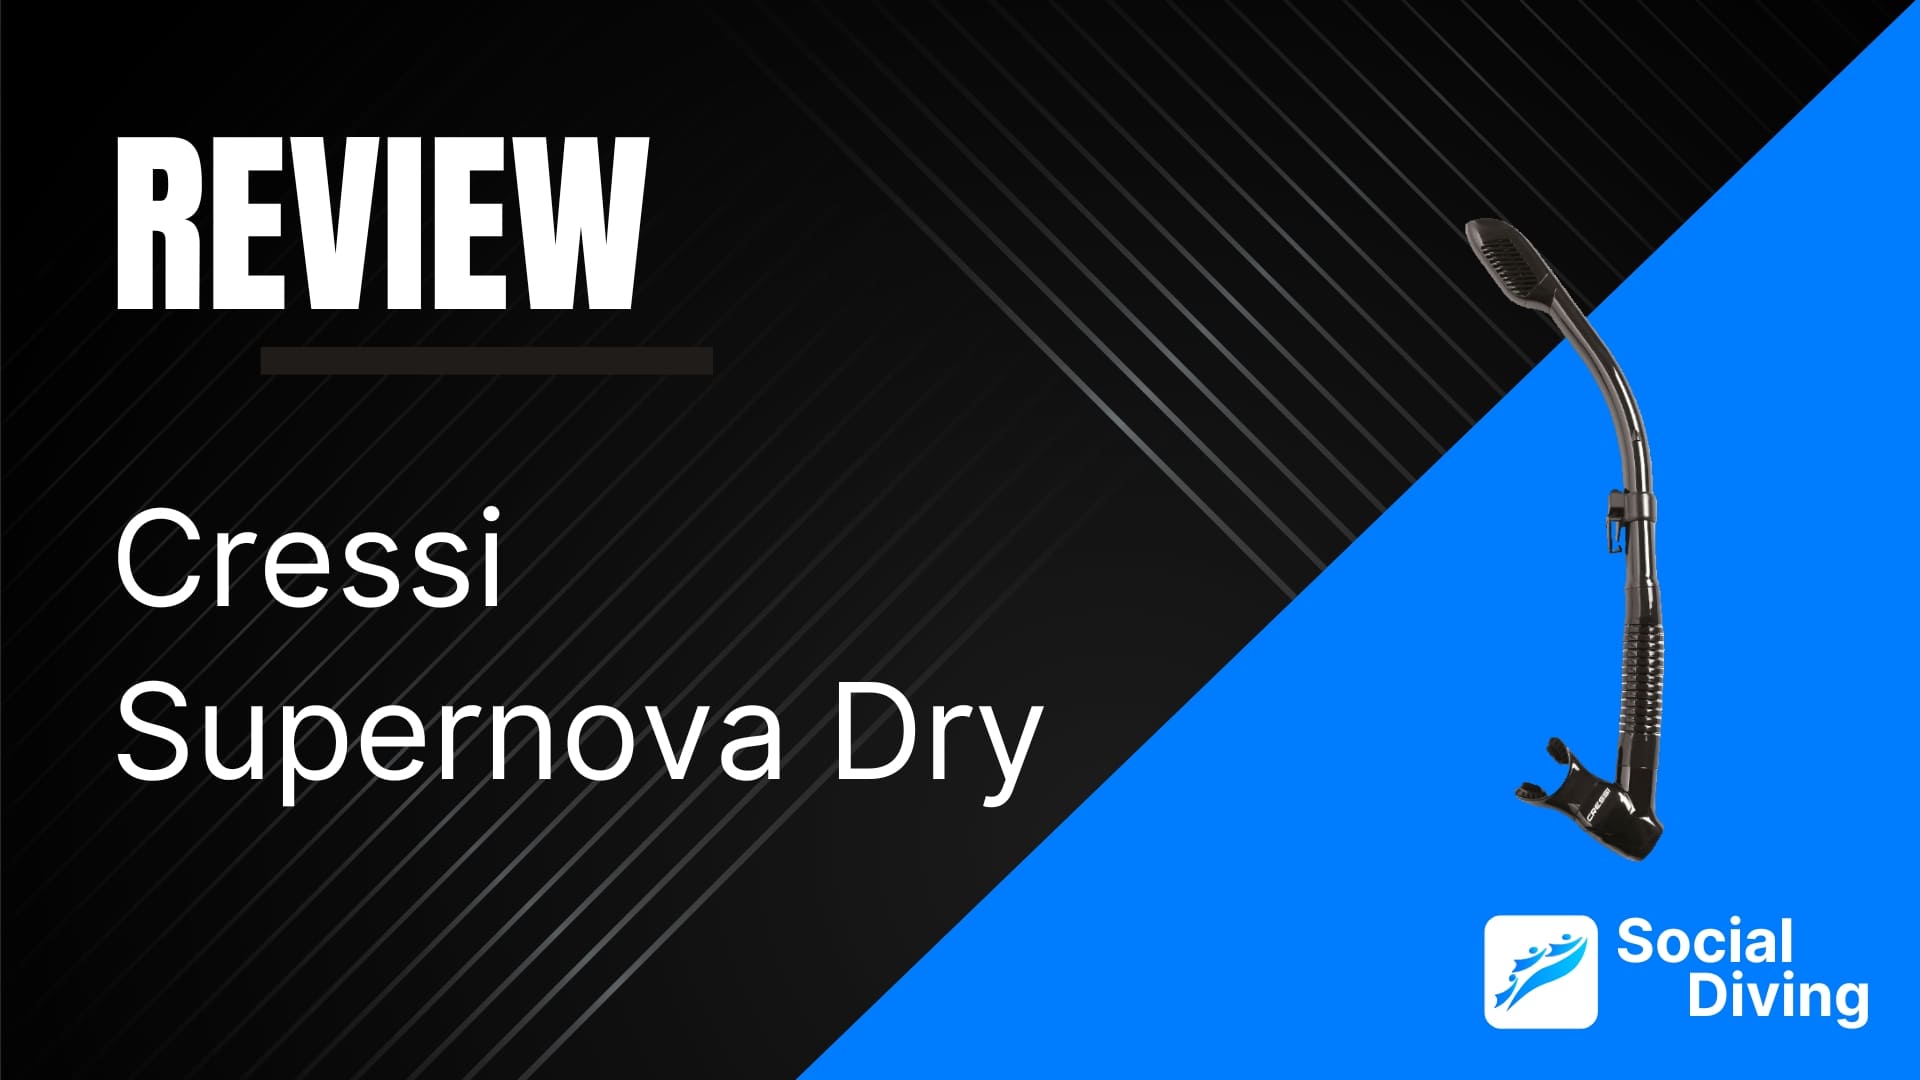 Cressi Supernova Dry review